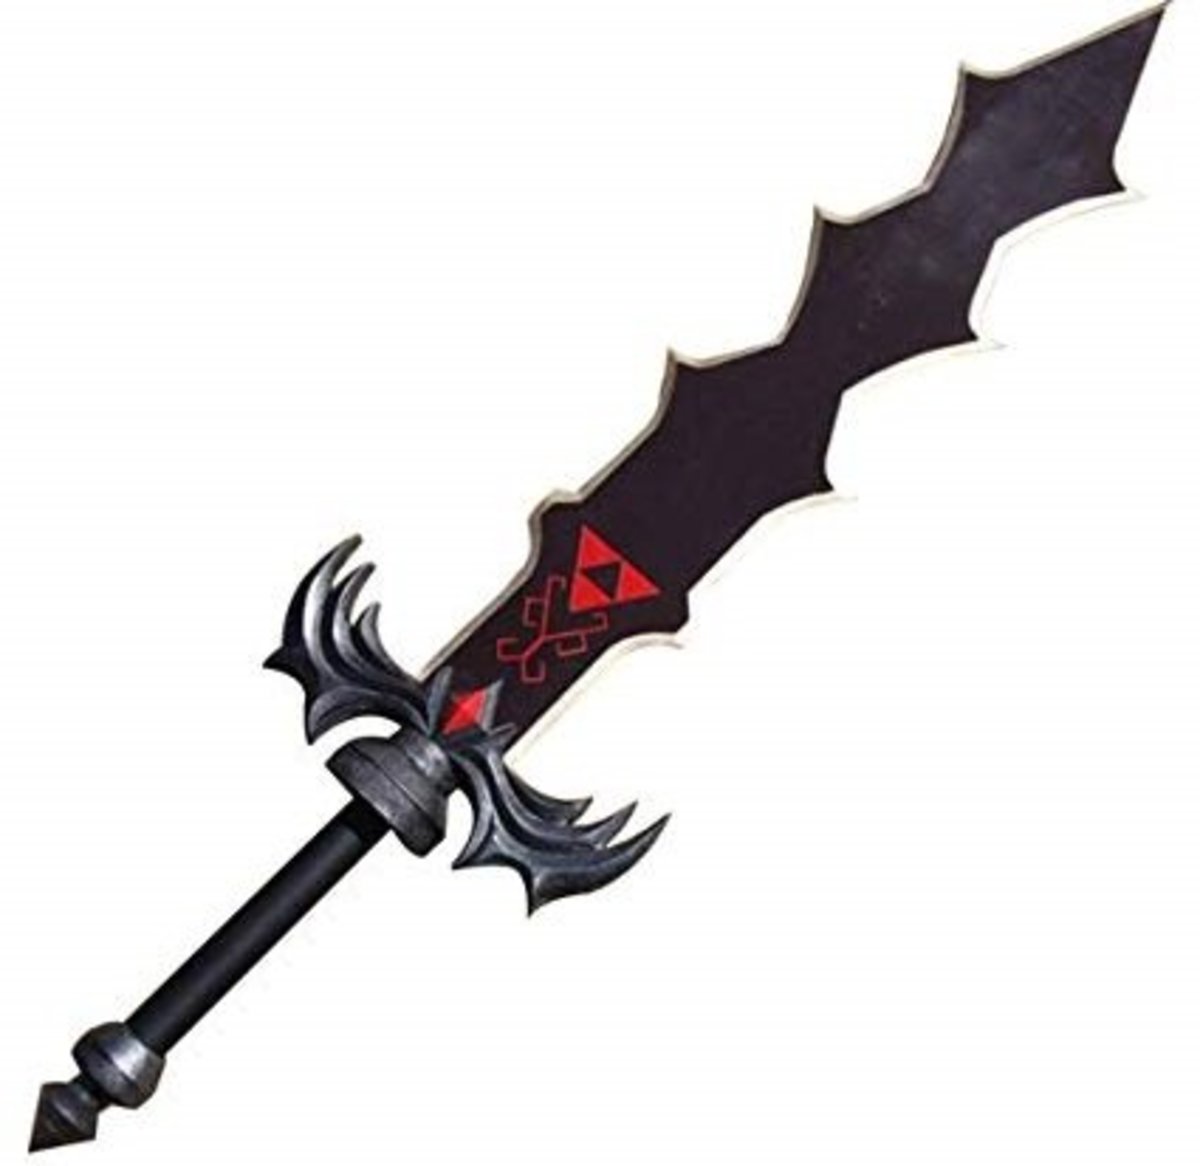 Demise's Sword